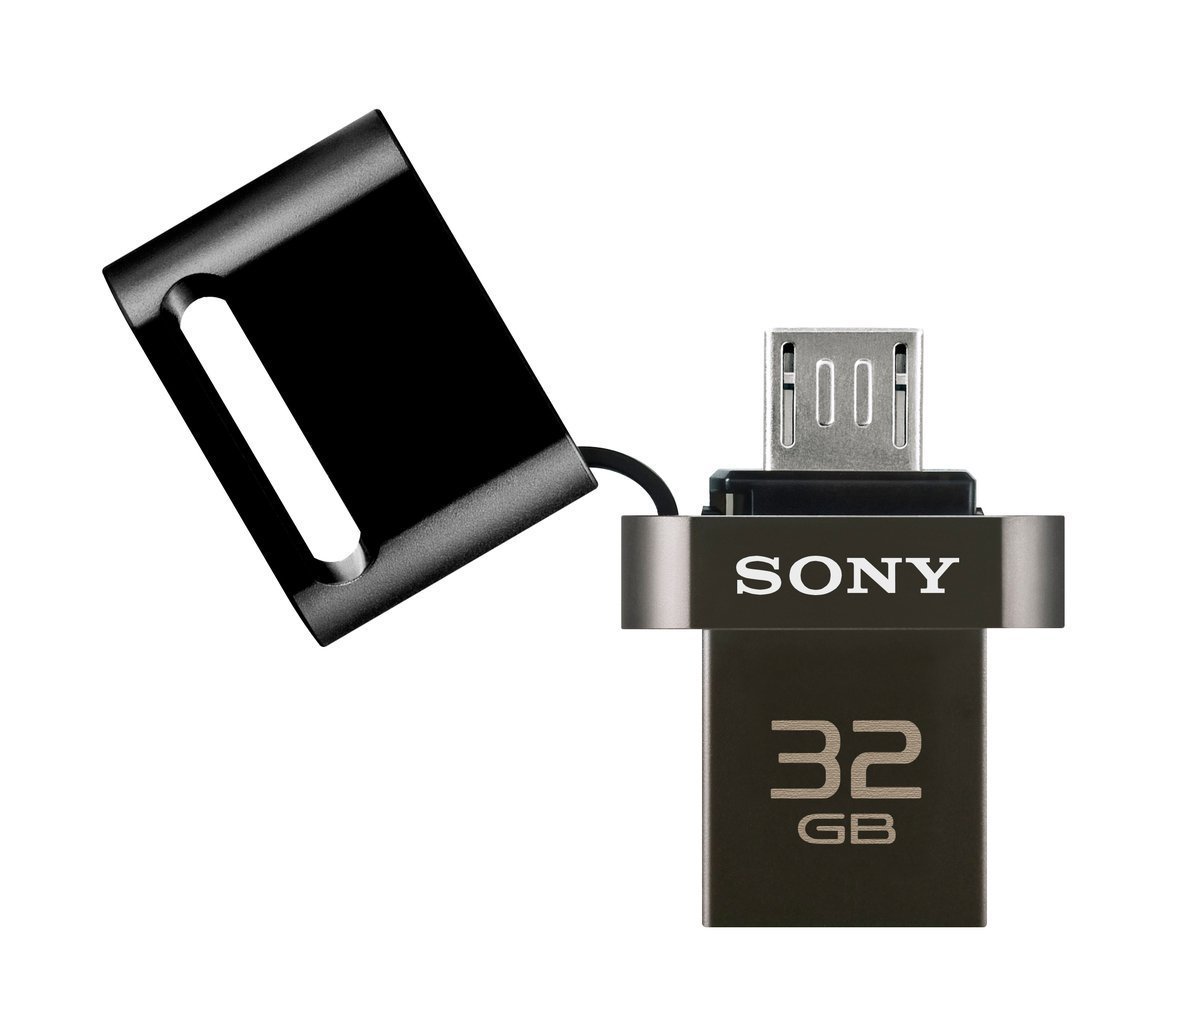 Thẻ nhớ USB SONY USM32SA3 32GB - Hàng chính hãng